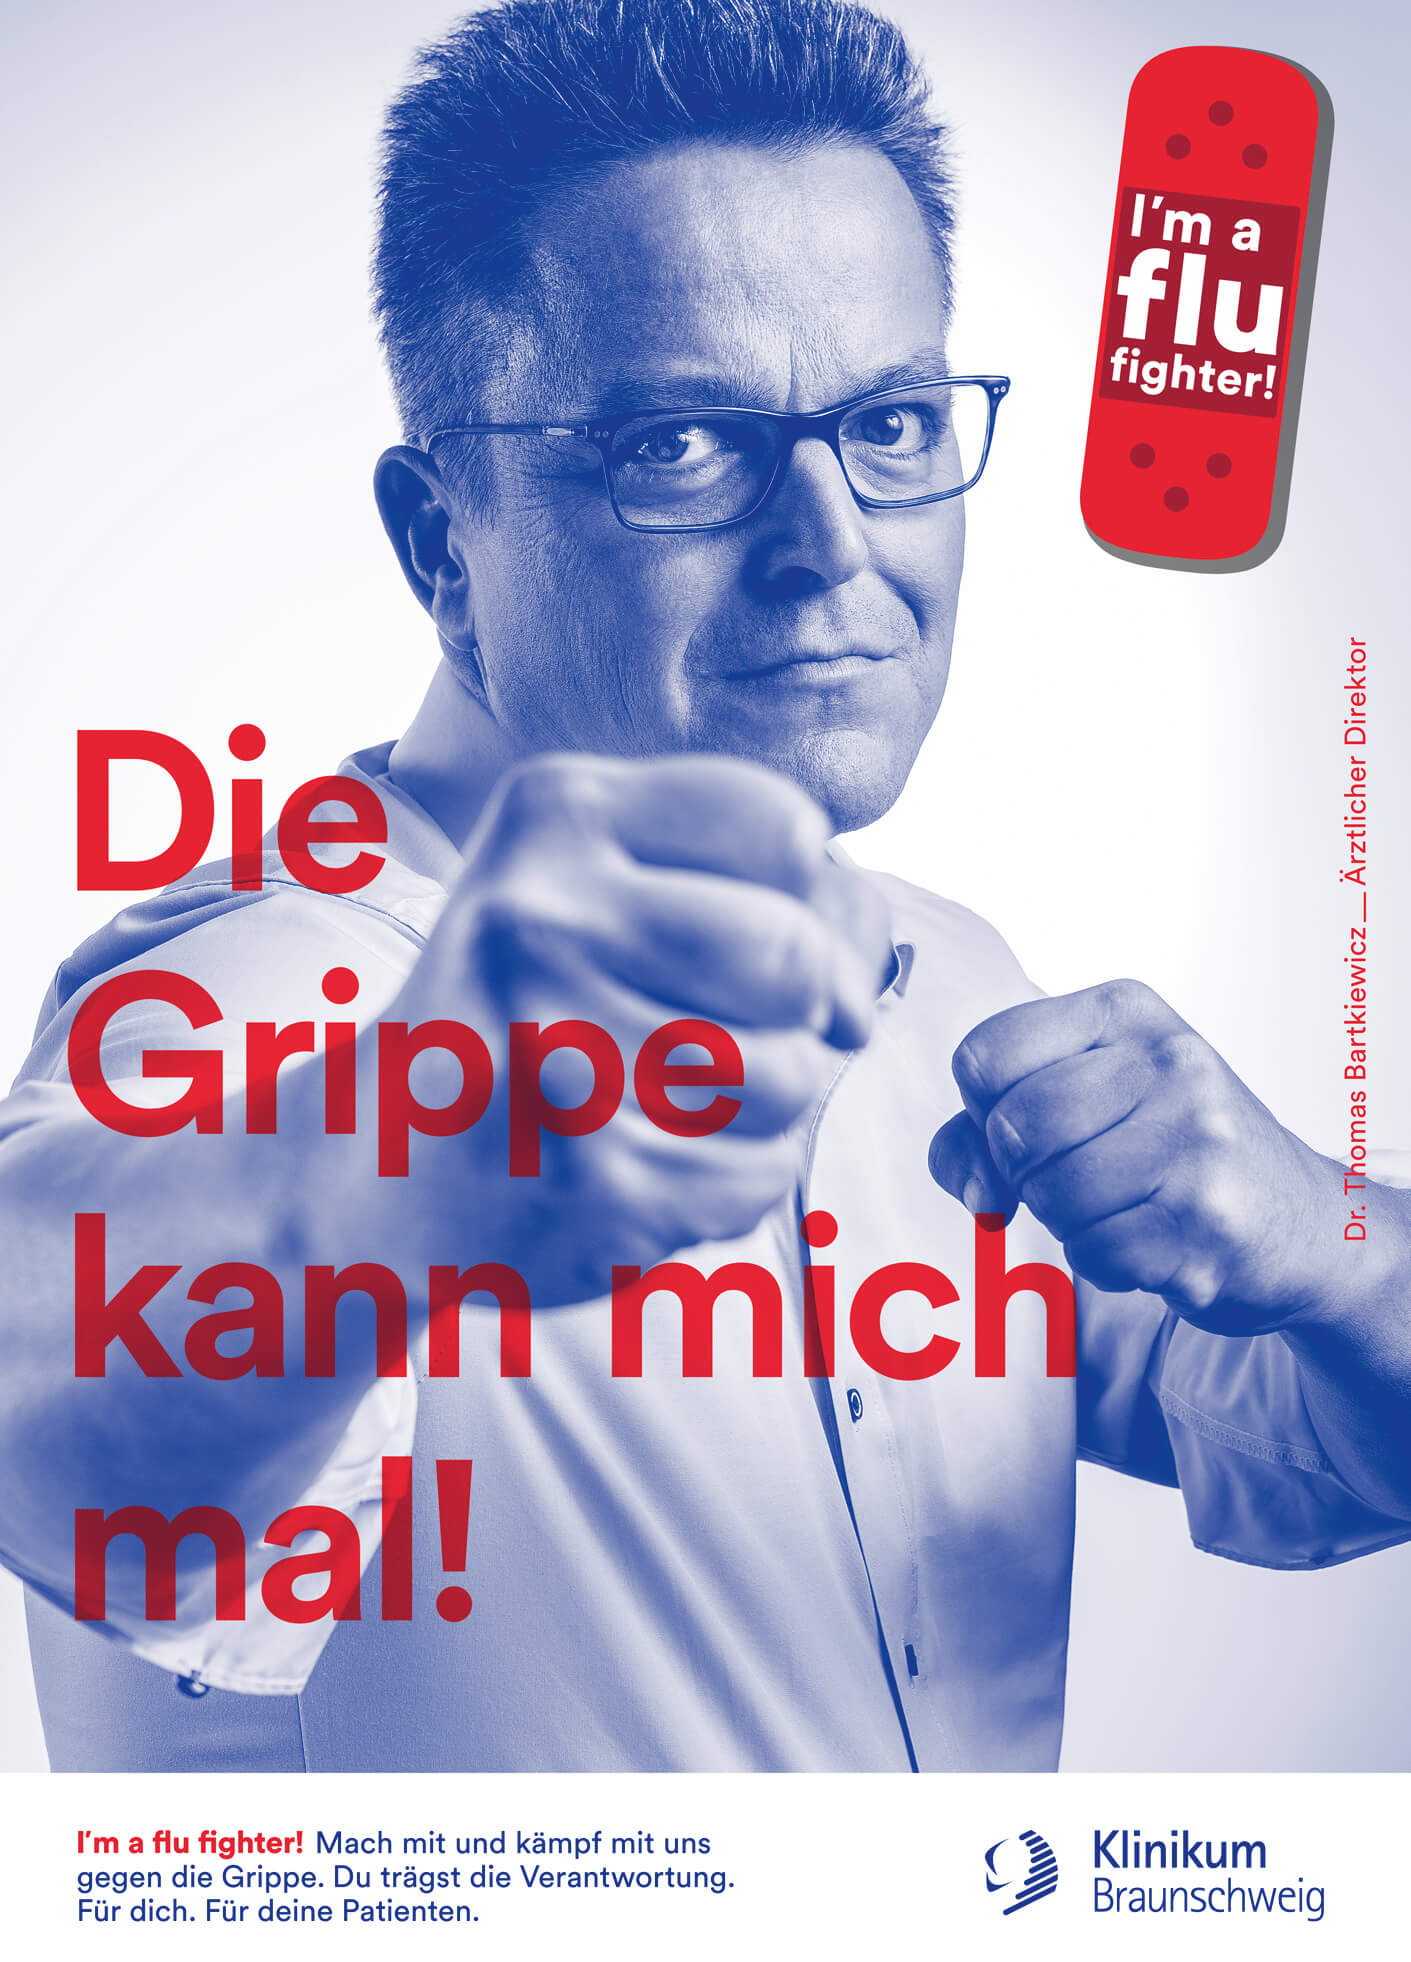 cyclos klinikum braunschweig kampagne flu fighter plakat marketing werbeagentur